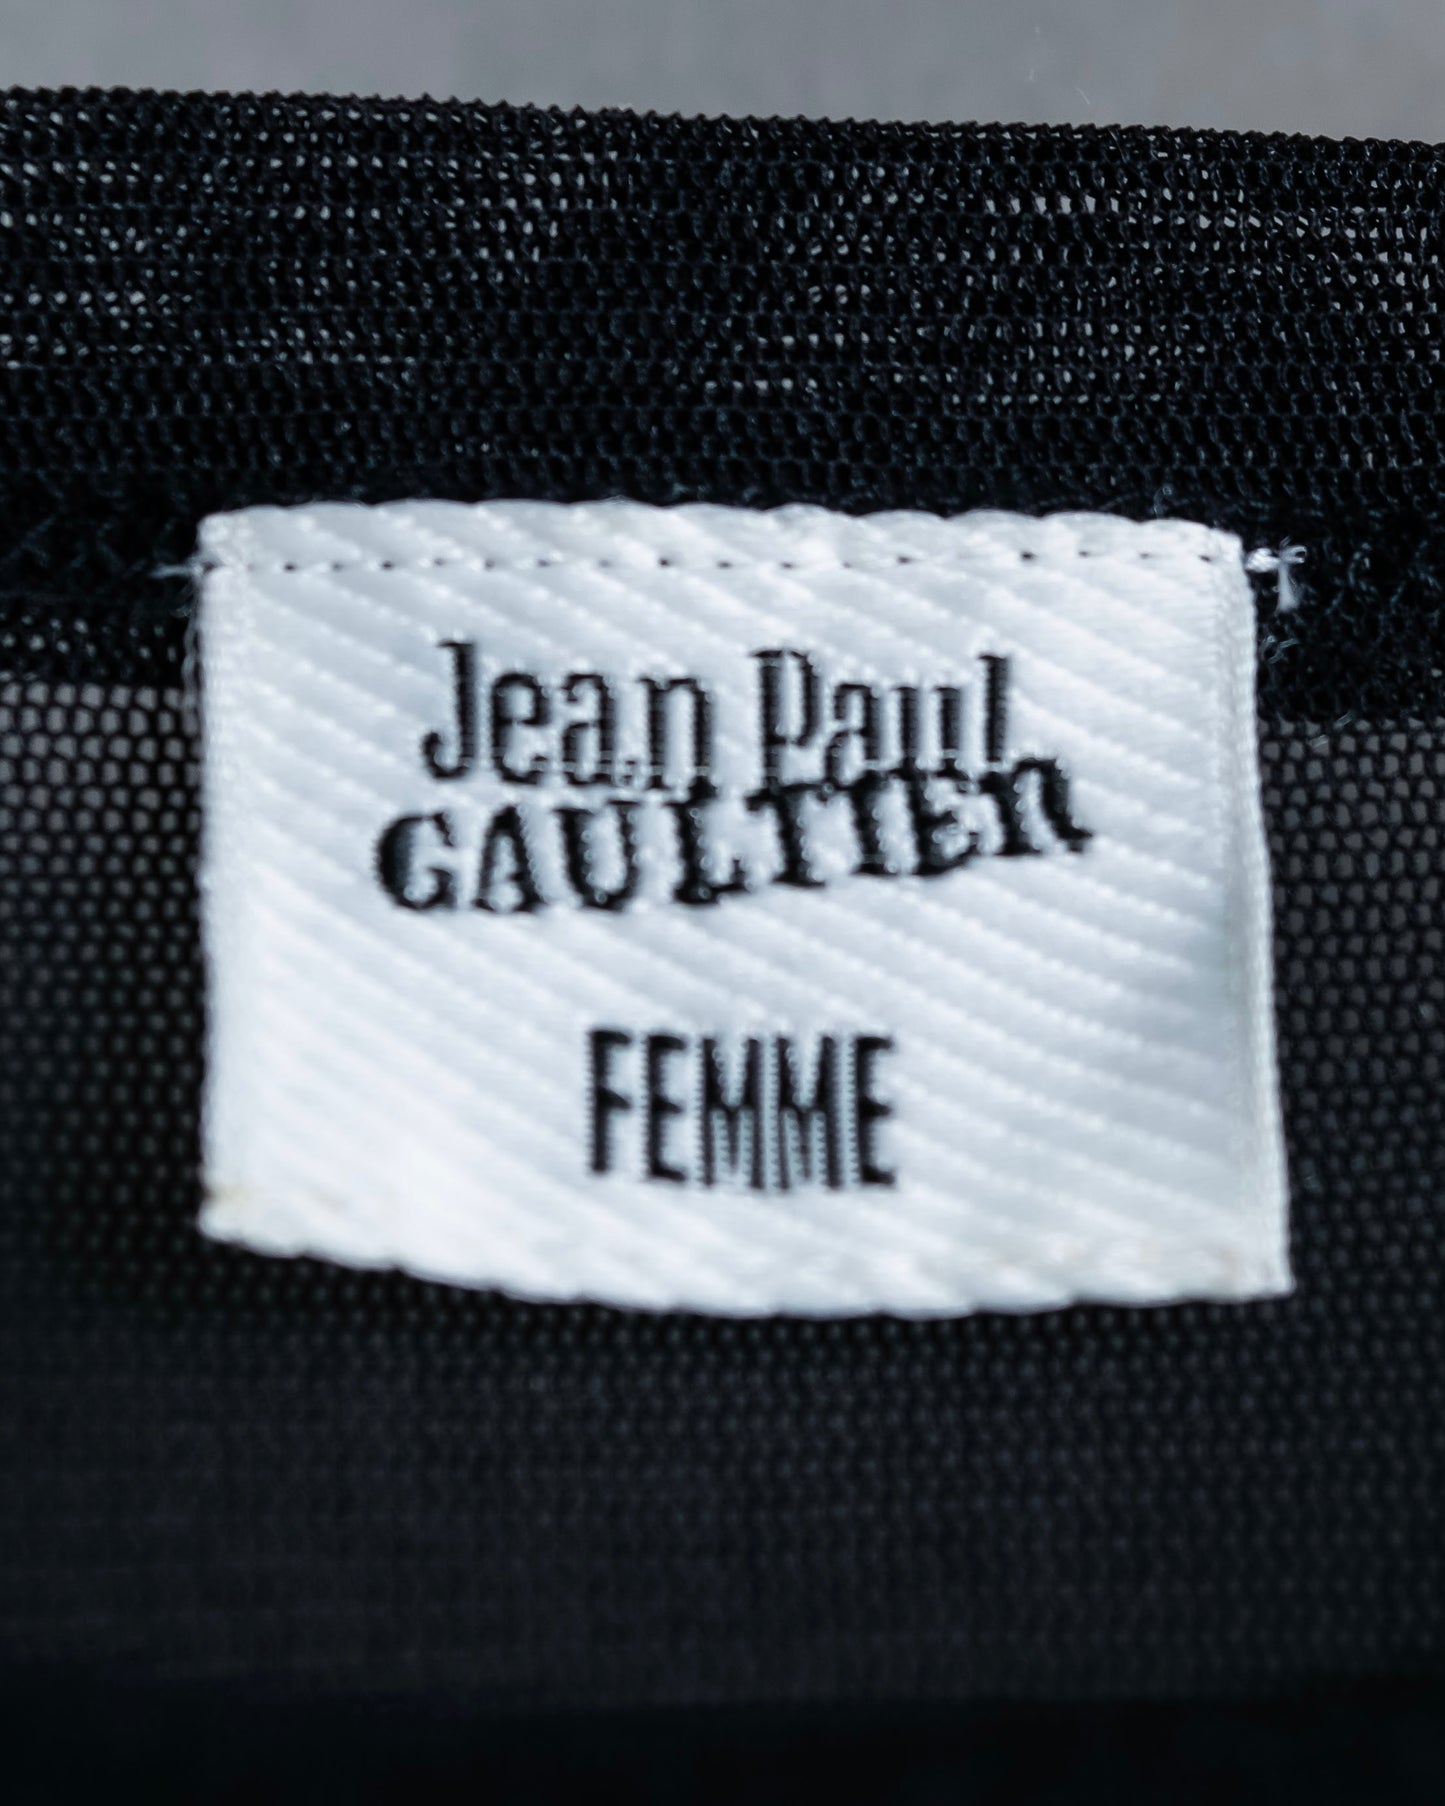 “Jean Paul Gautier” Fringe detailed  asymmetry shear top